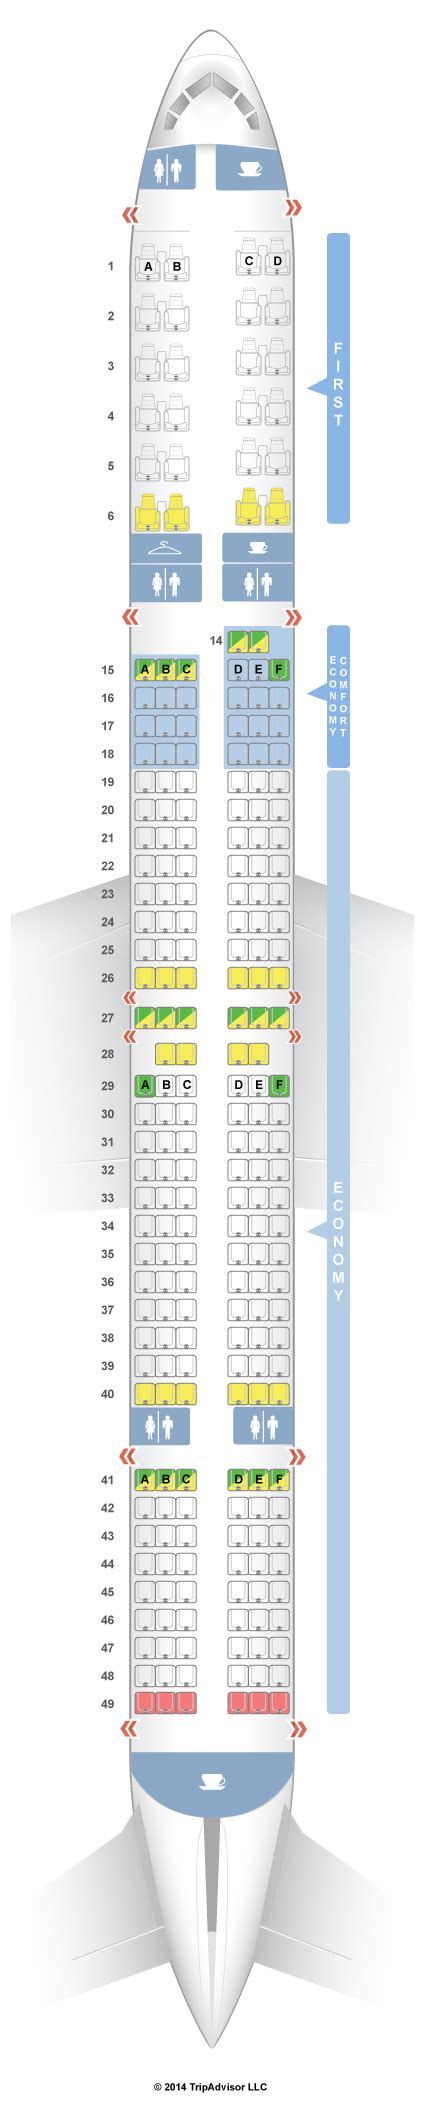 Seatguru Seat Map Delta Boeing 757 300 75y V2 Boeing 757 300